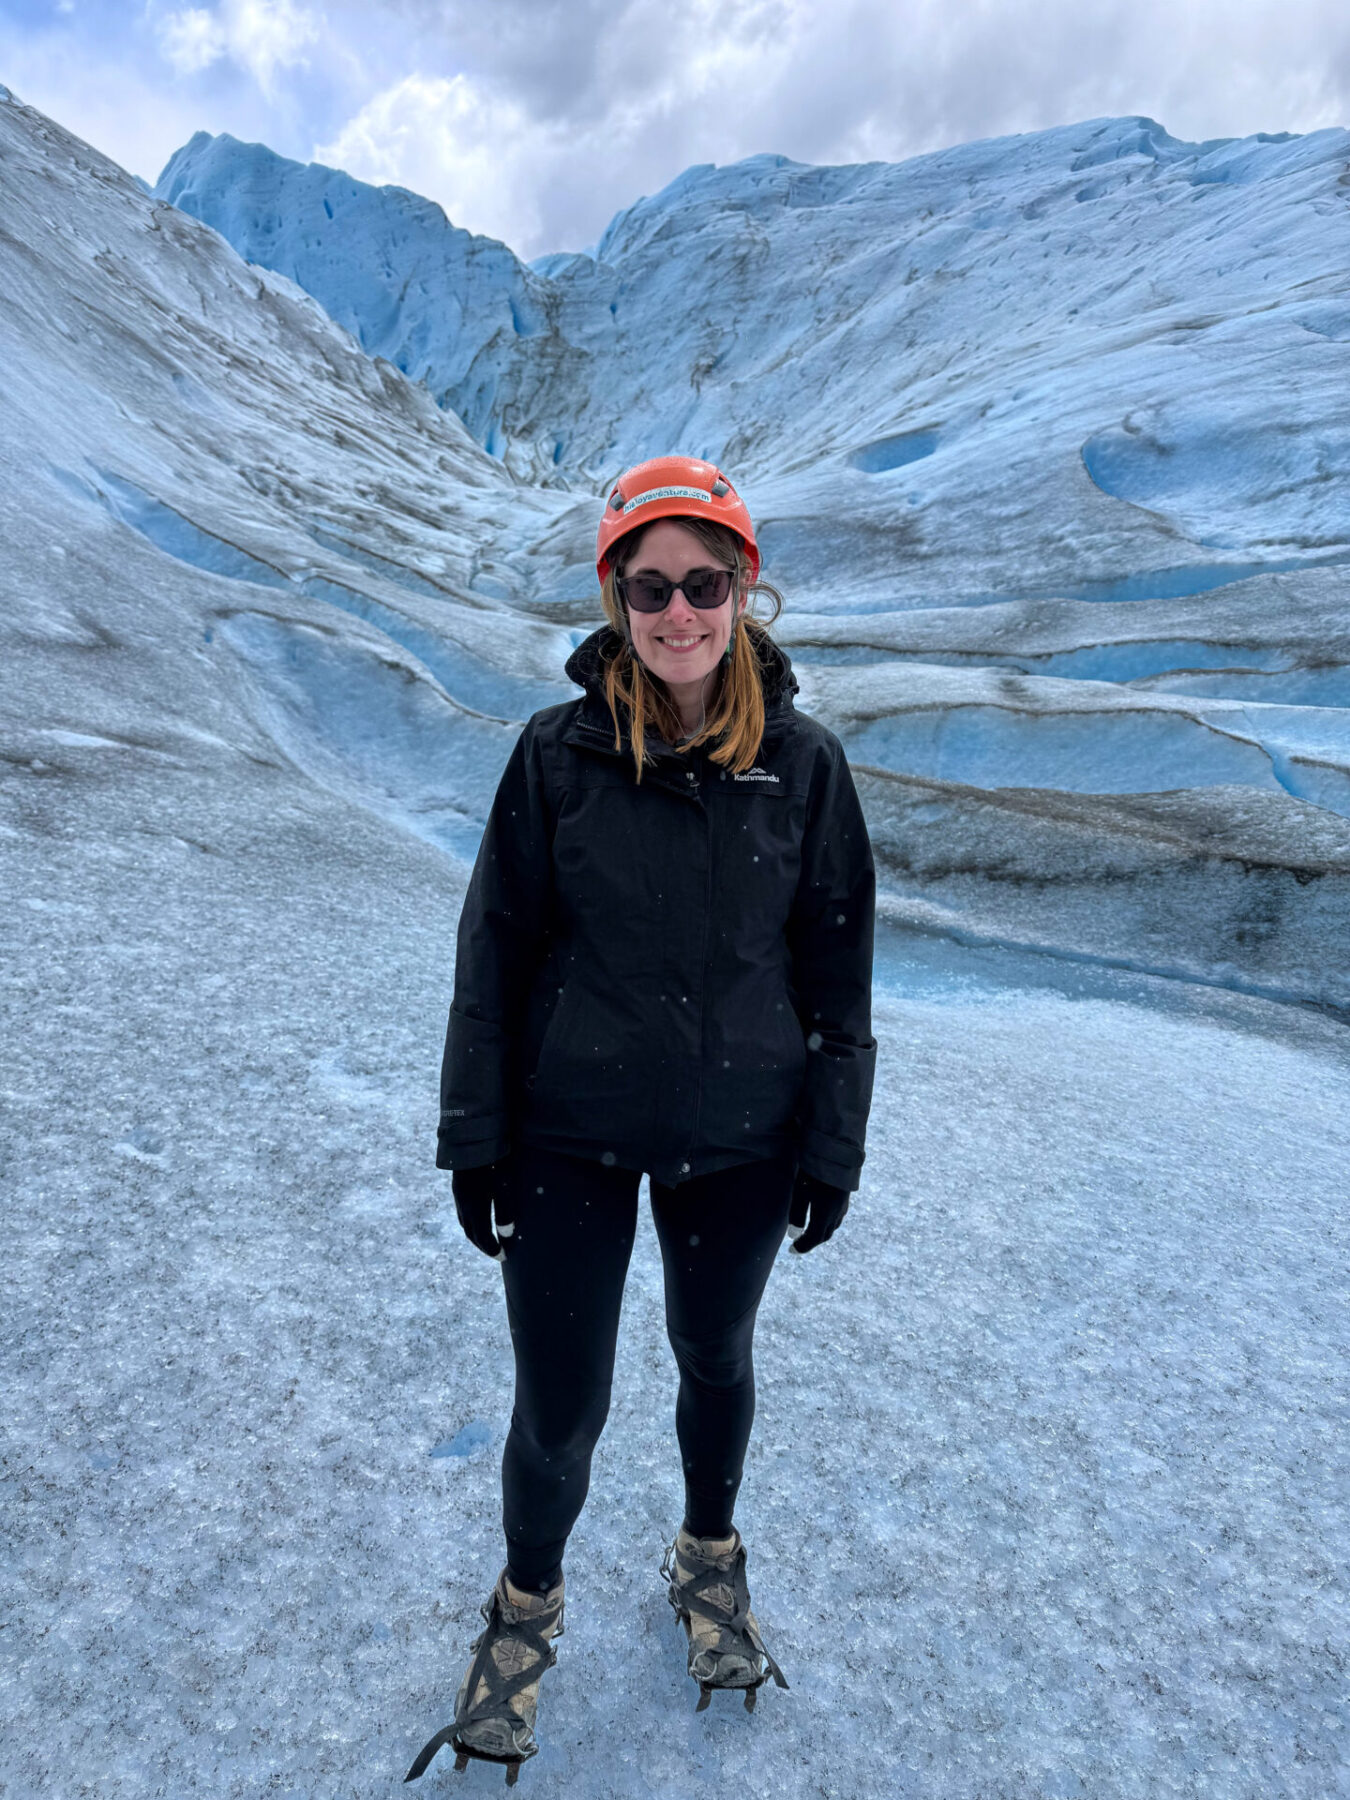 The Perito Moreno Glacier minitrekking experience